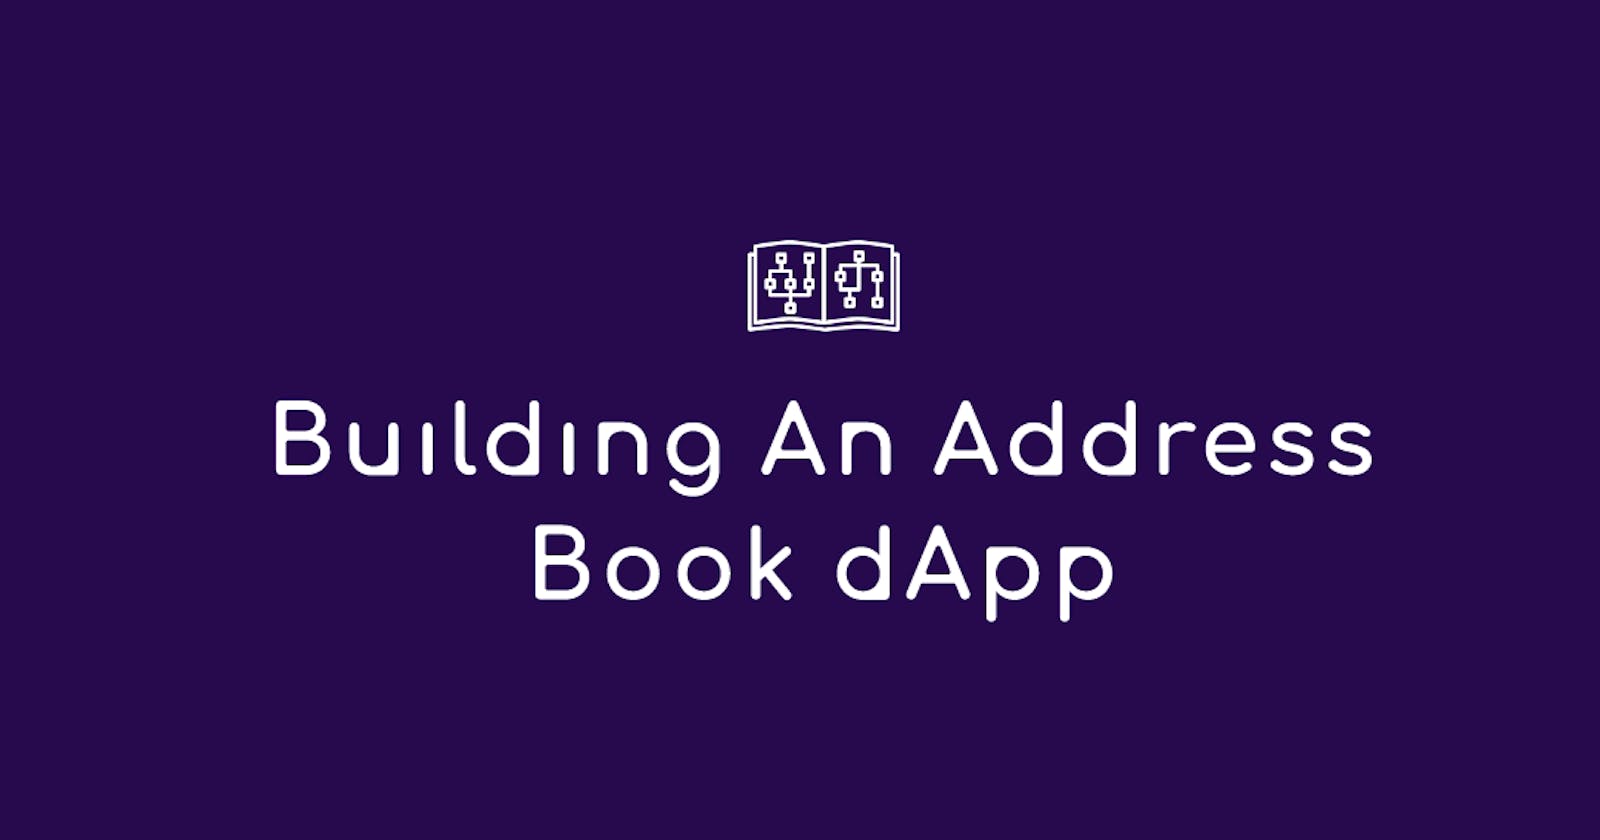 Building An Address Book dApp. (Part 1)